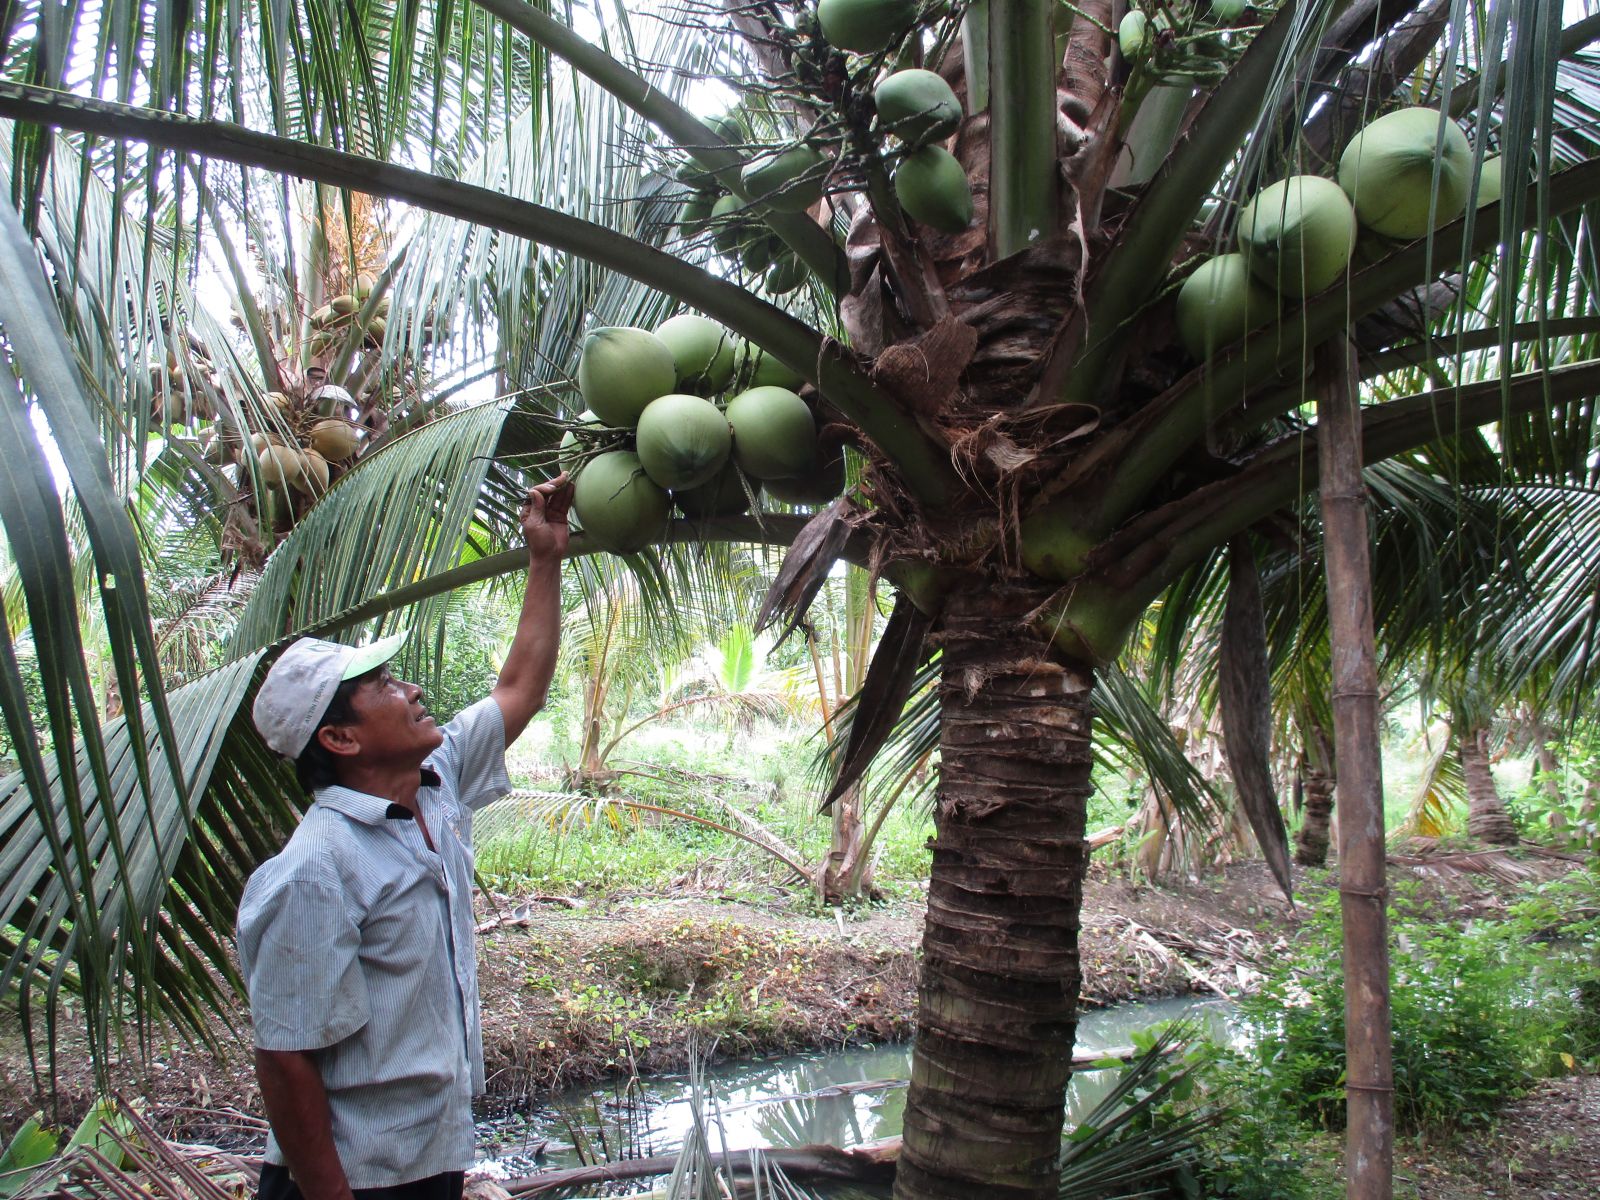 Hái dừa trong điểm du lịch miệt vườn Sáu Lế xã Phú Thọ